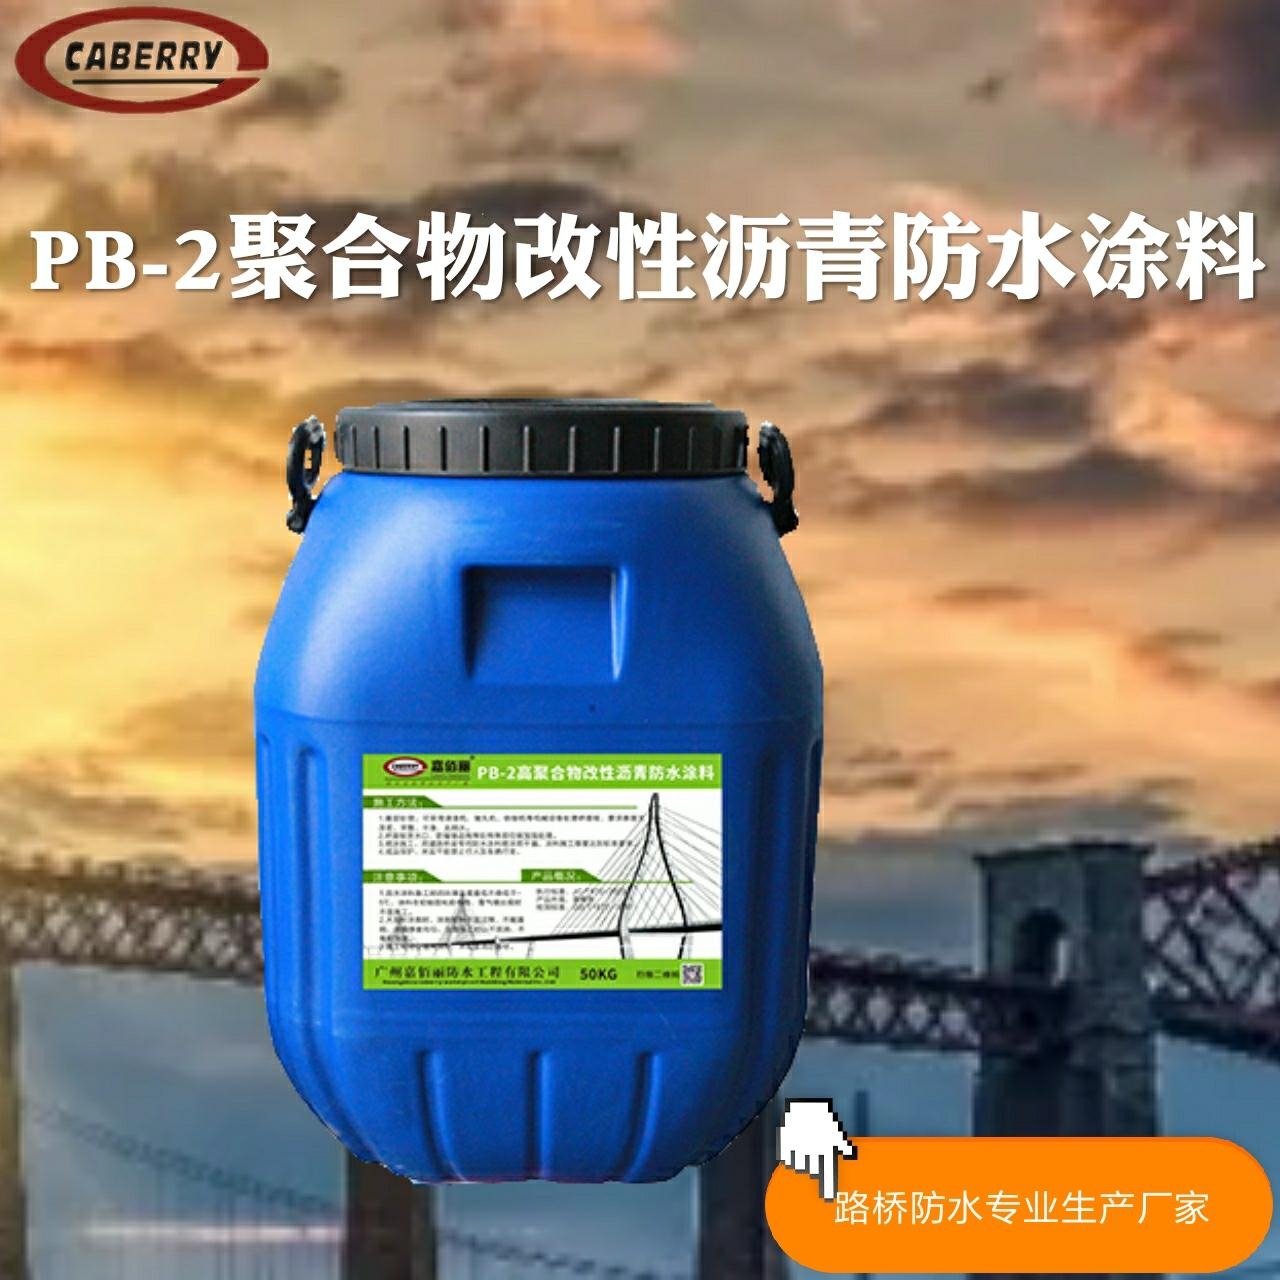 道桥设计要求防水层 PB-2聚合物改性沥青防水涂料 质量达到要求标准图片